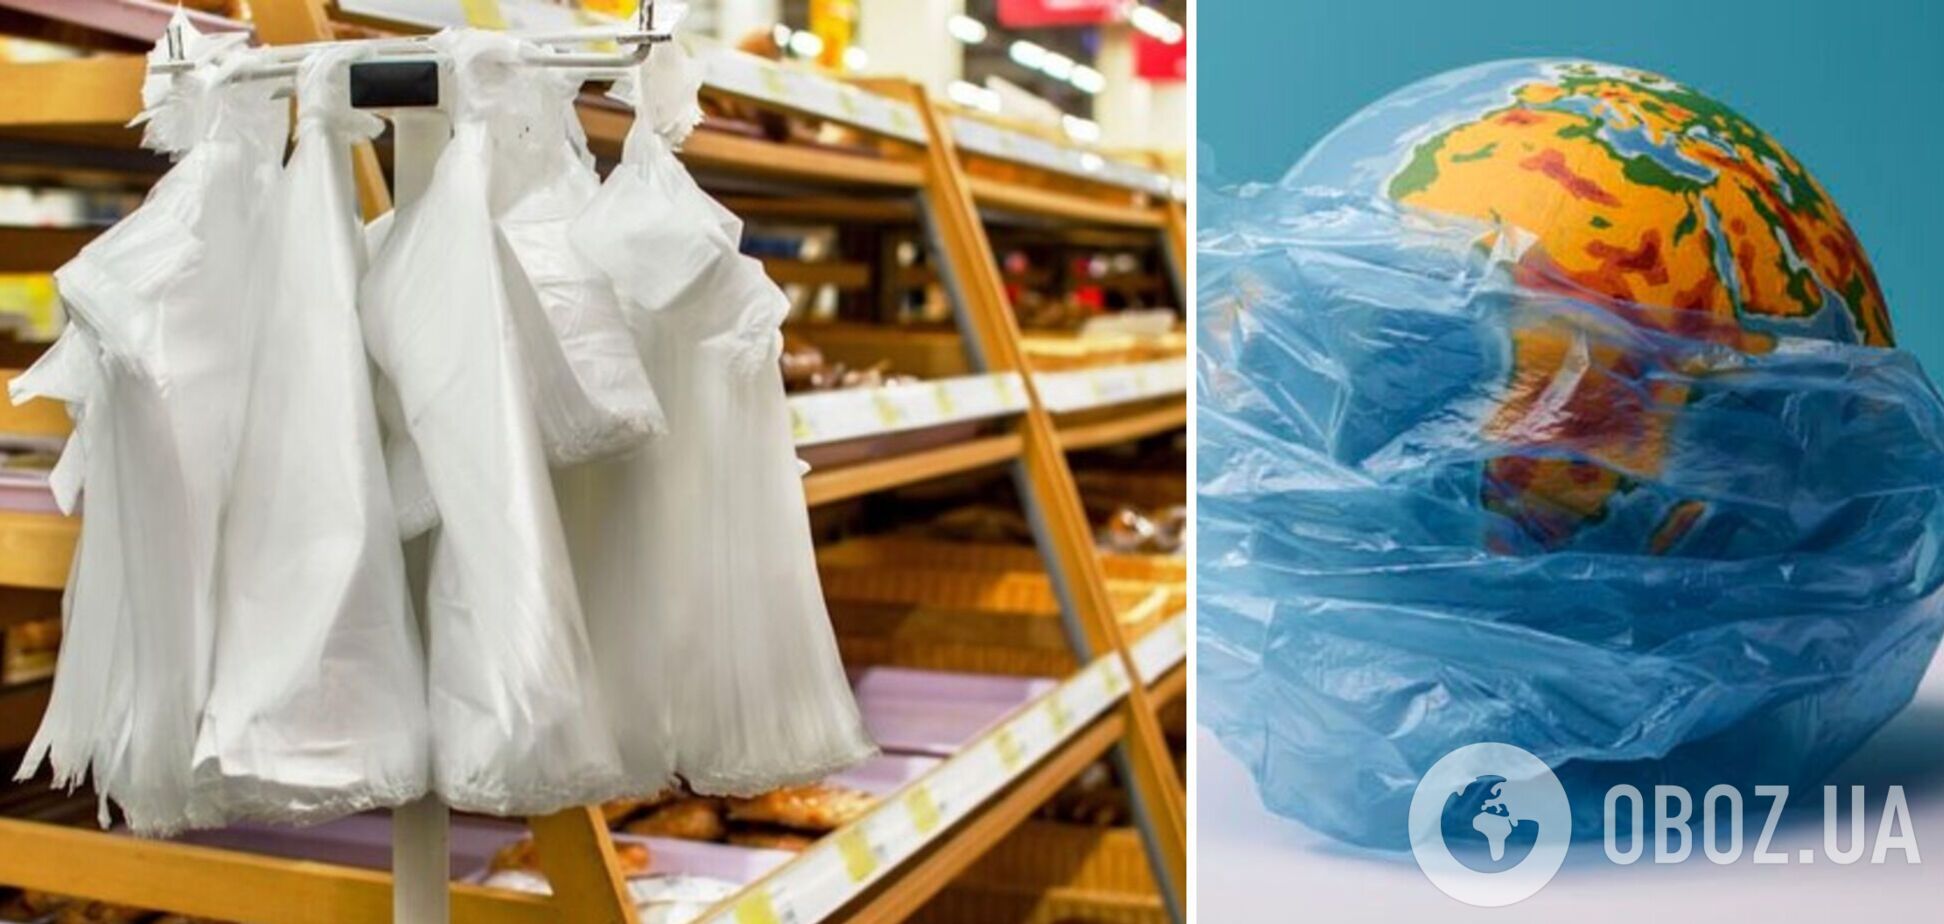 Пластиковые пакеты как яблоко раздора, или Зачем Украина импортирует мусор